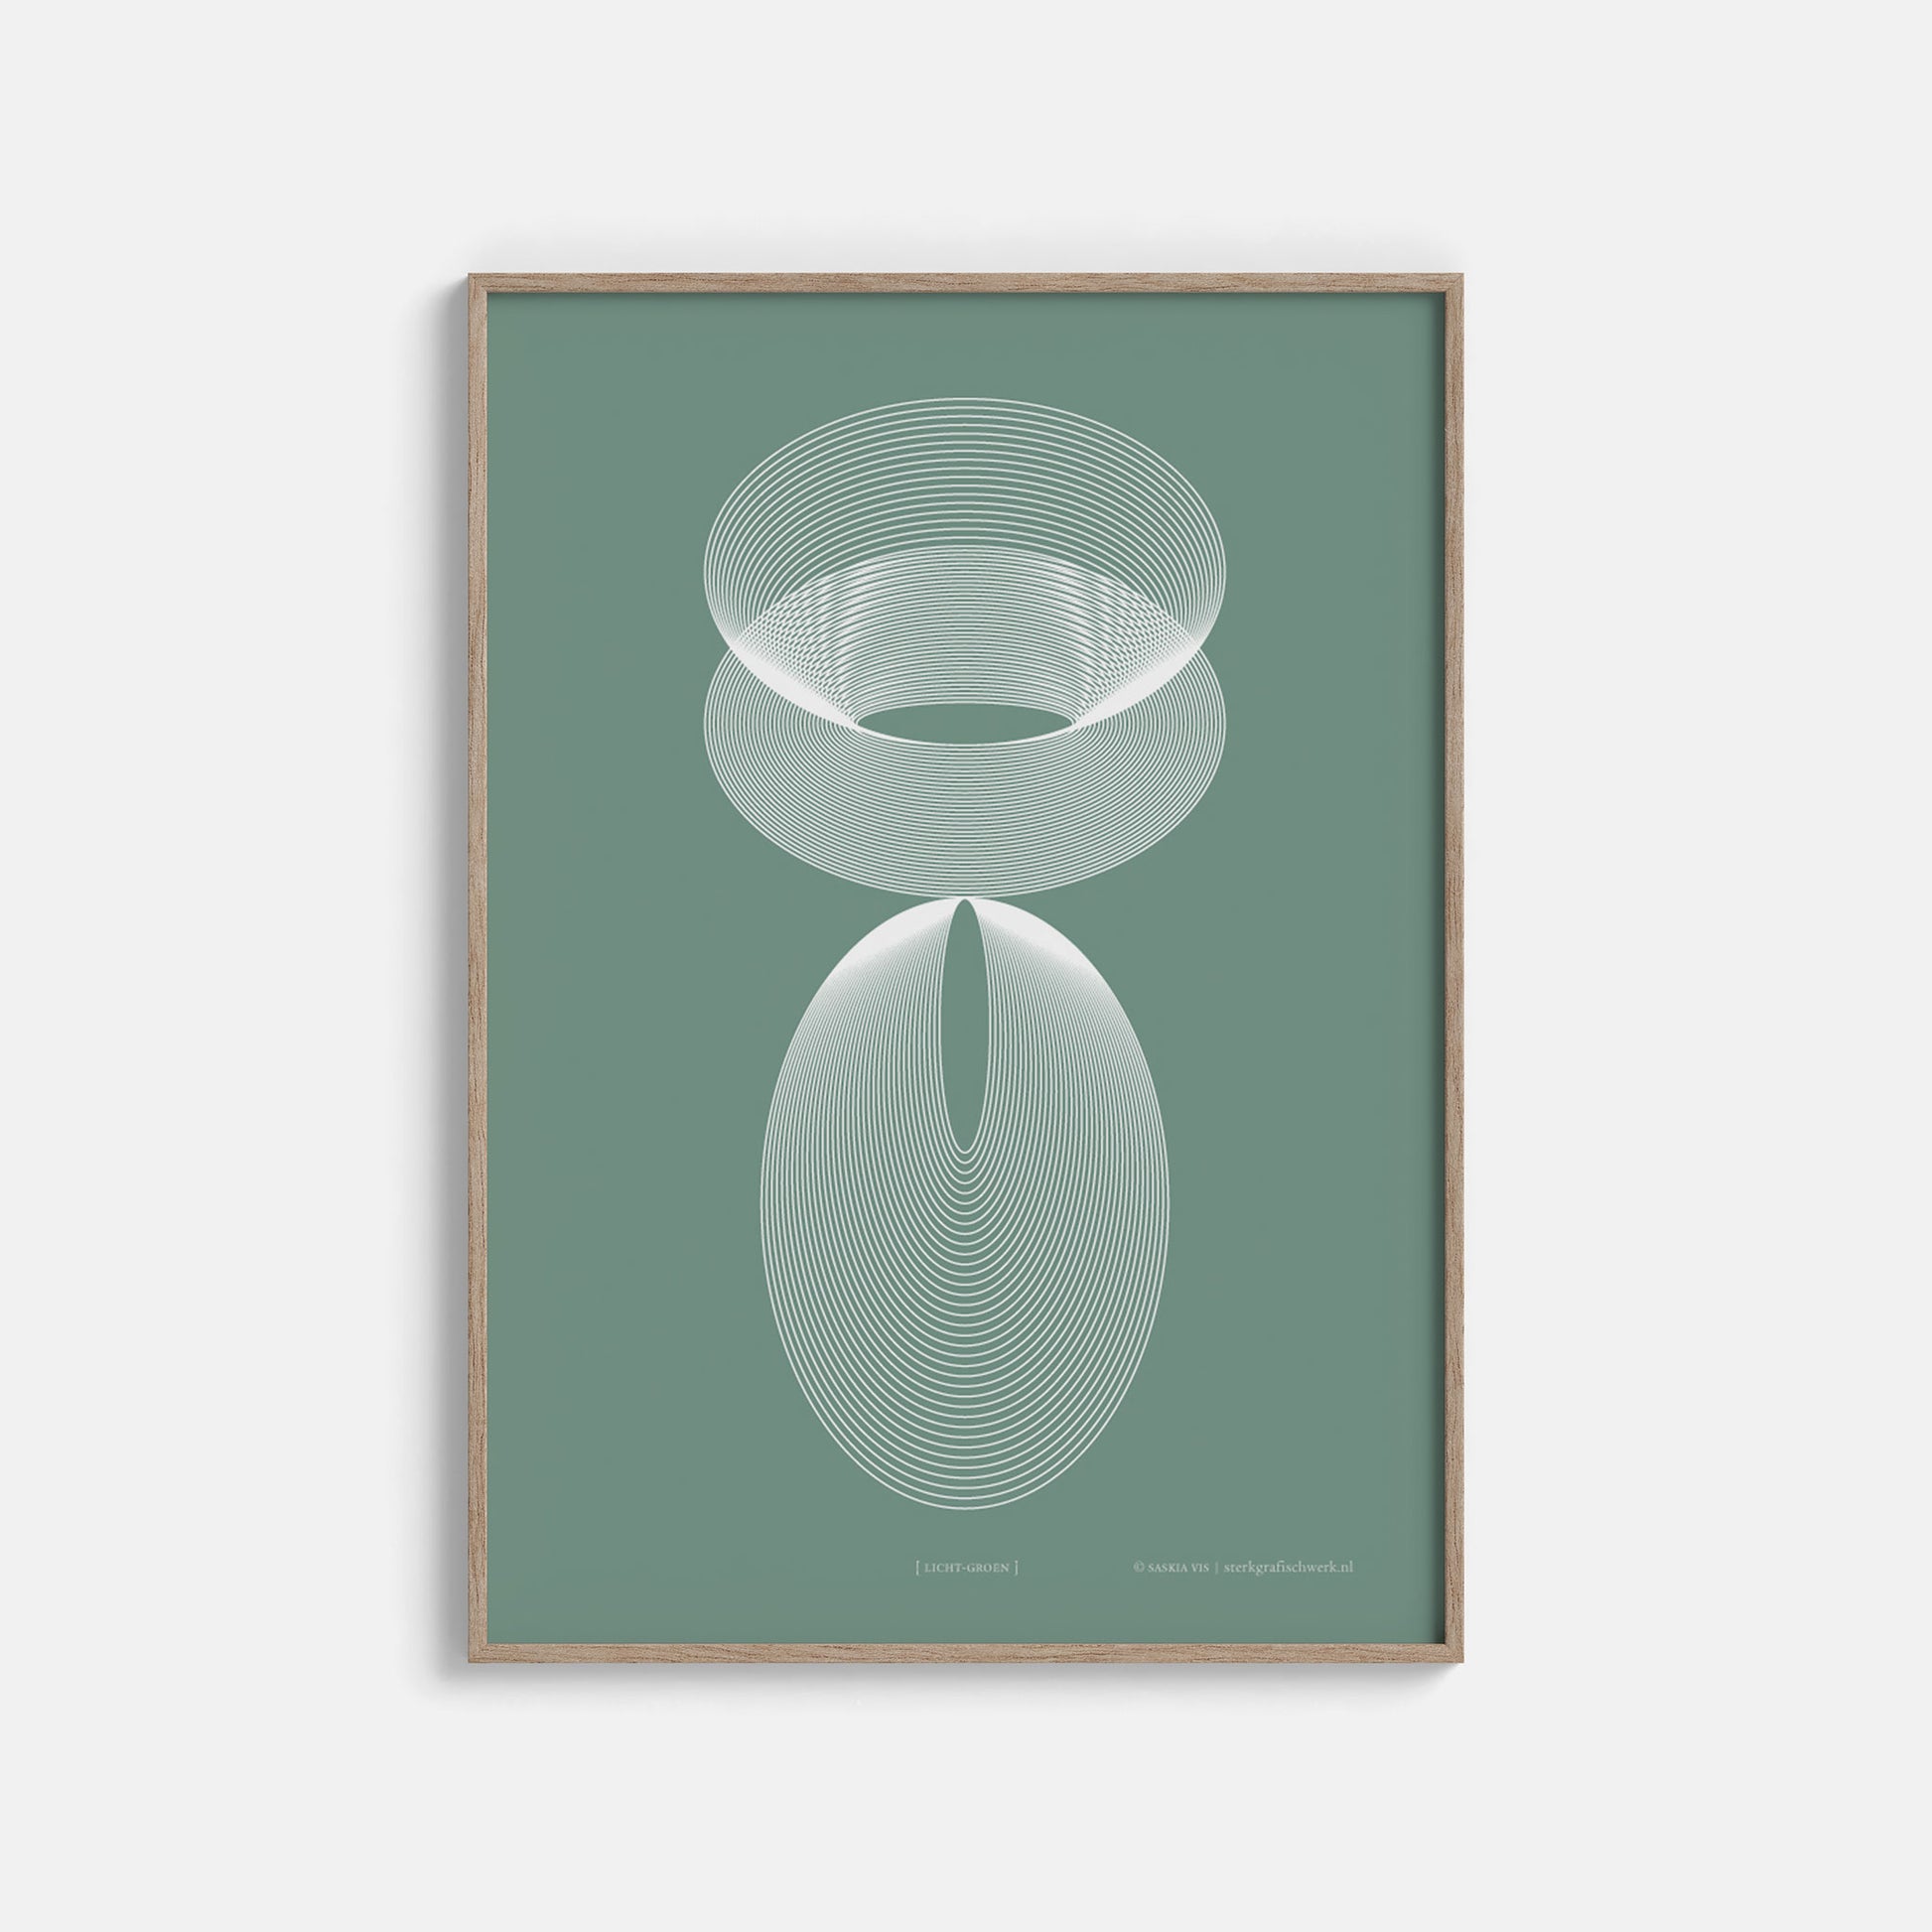 Productafbeelding, poster "licht-groen", ingelijst hangend aan een witte wand, een overzichtsfoto 